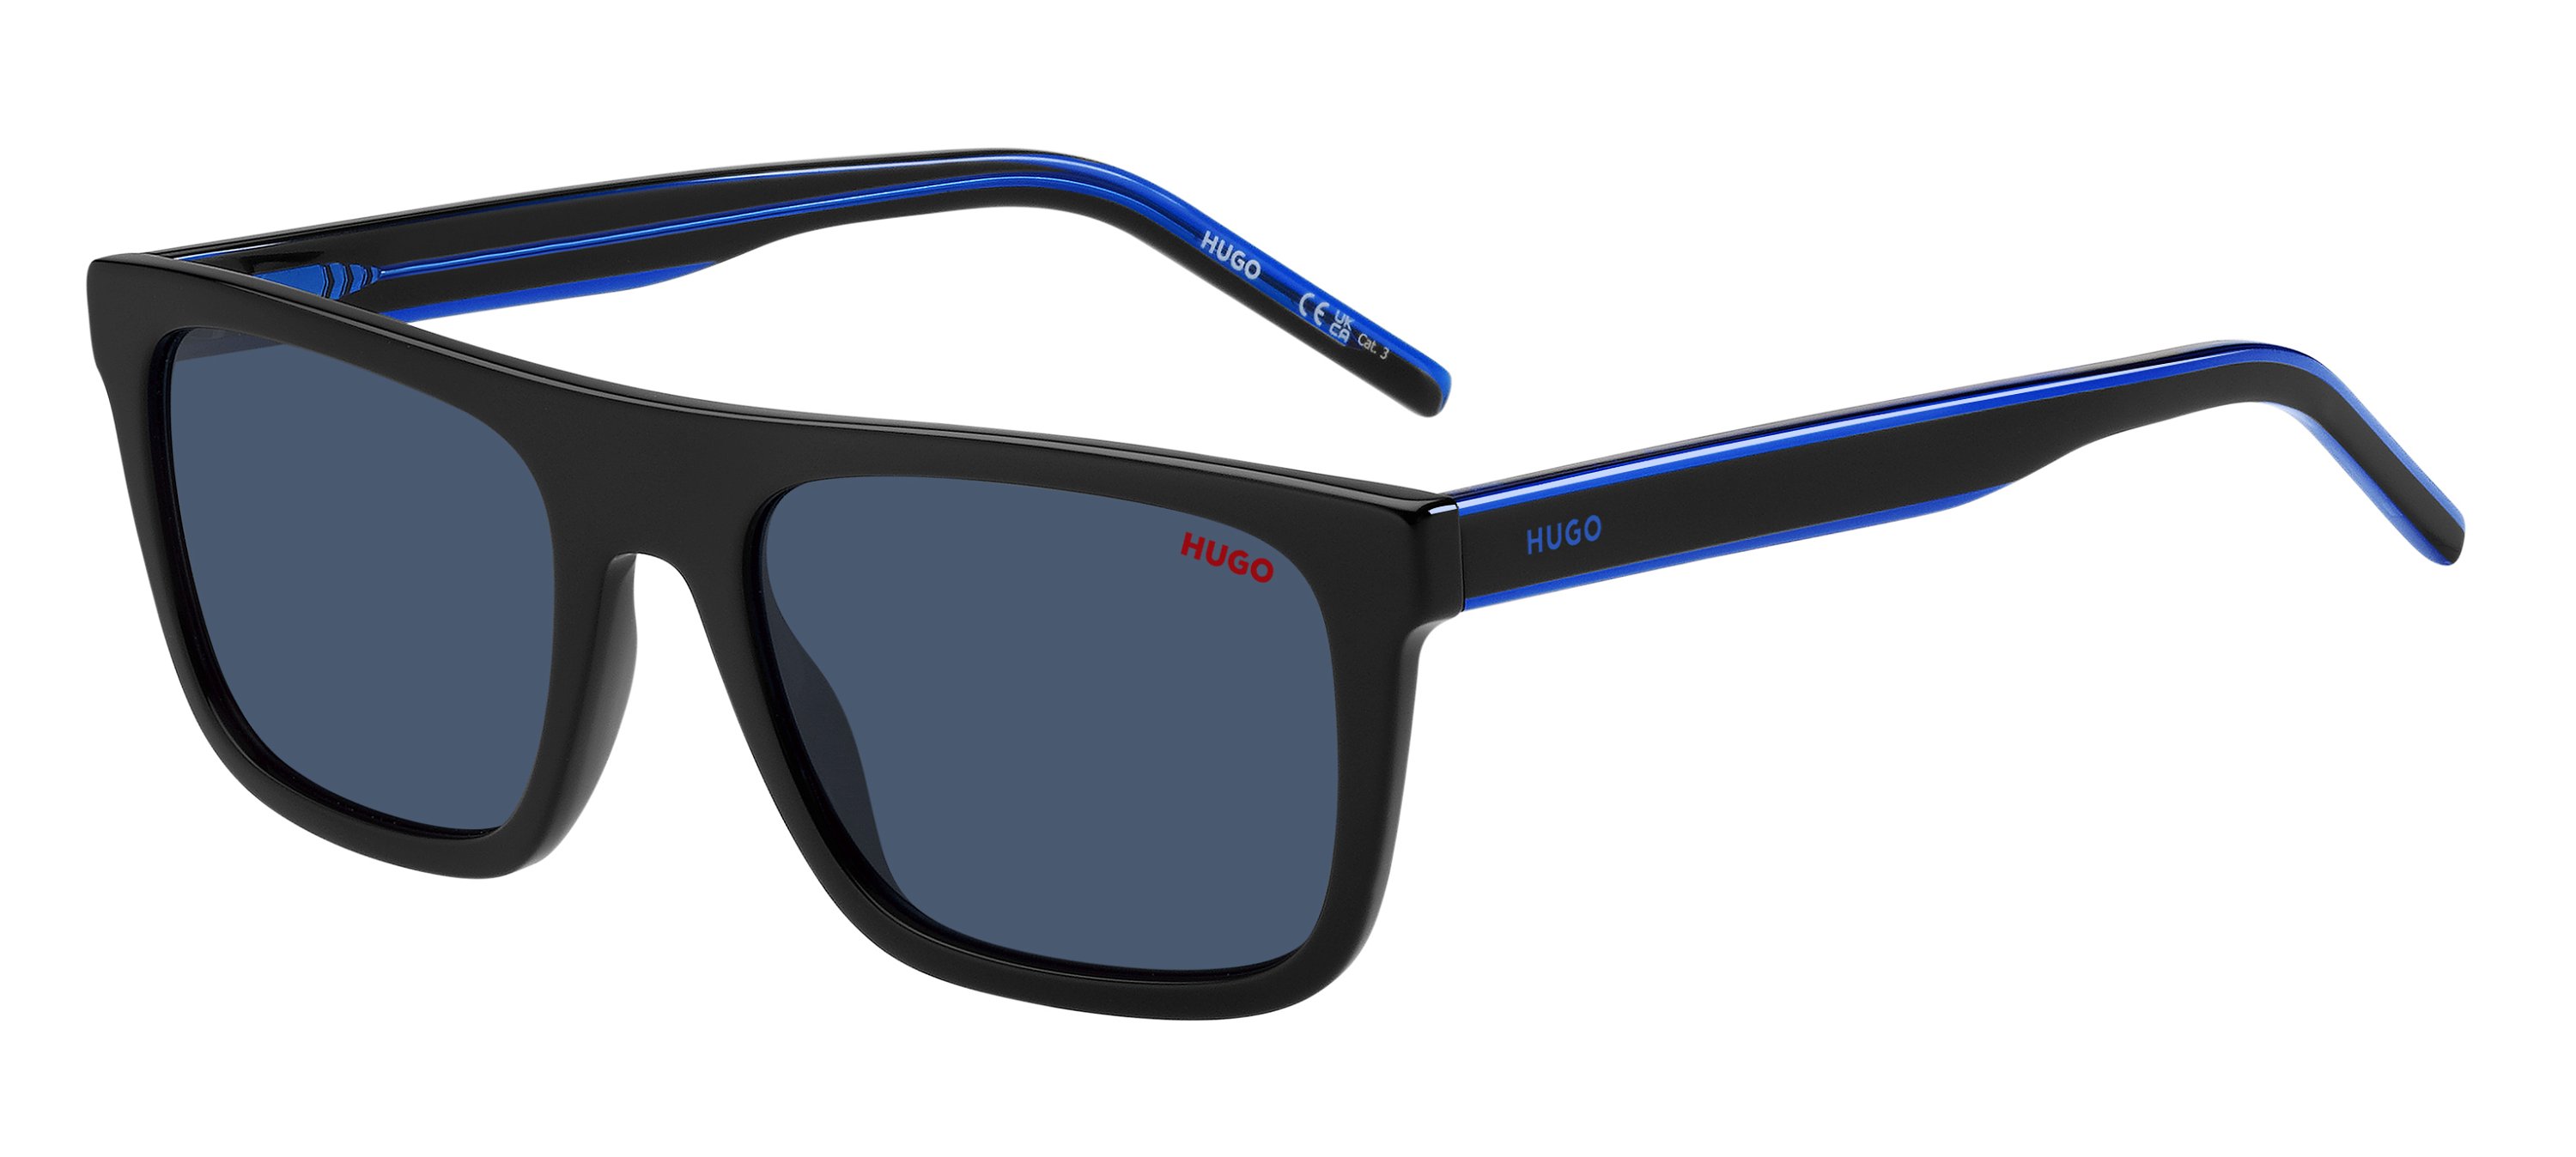 Das Bild zeigt die Sonnenbrille HG1297/S D51 von der Marke Hugo in blau/schwarz.